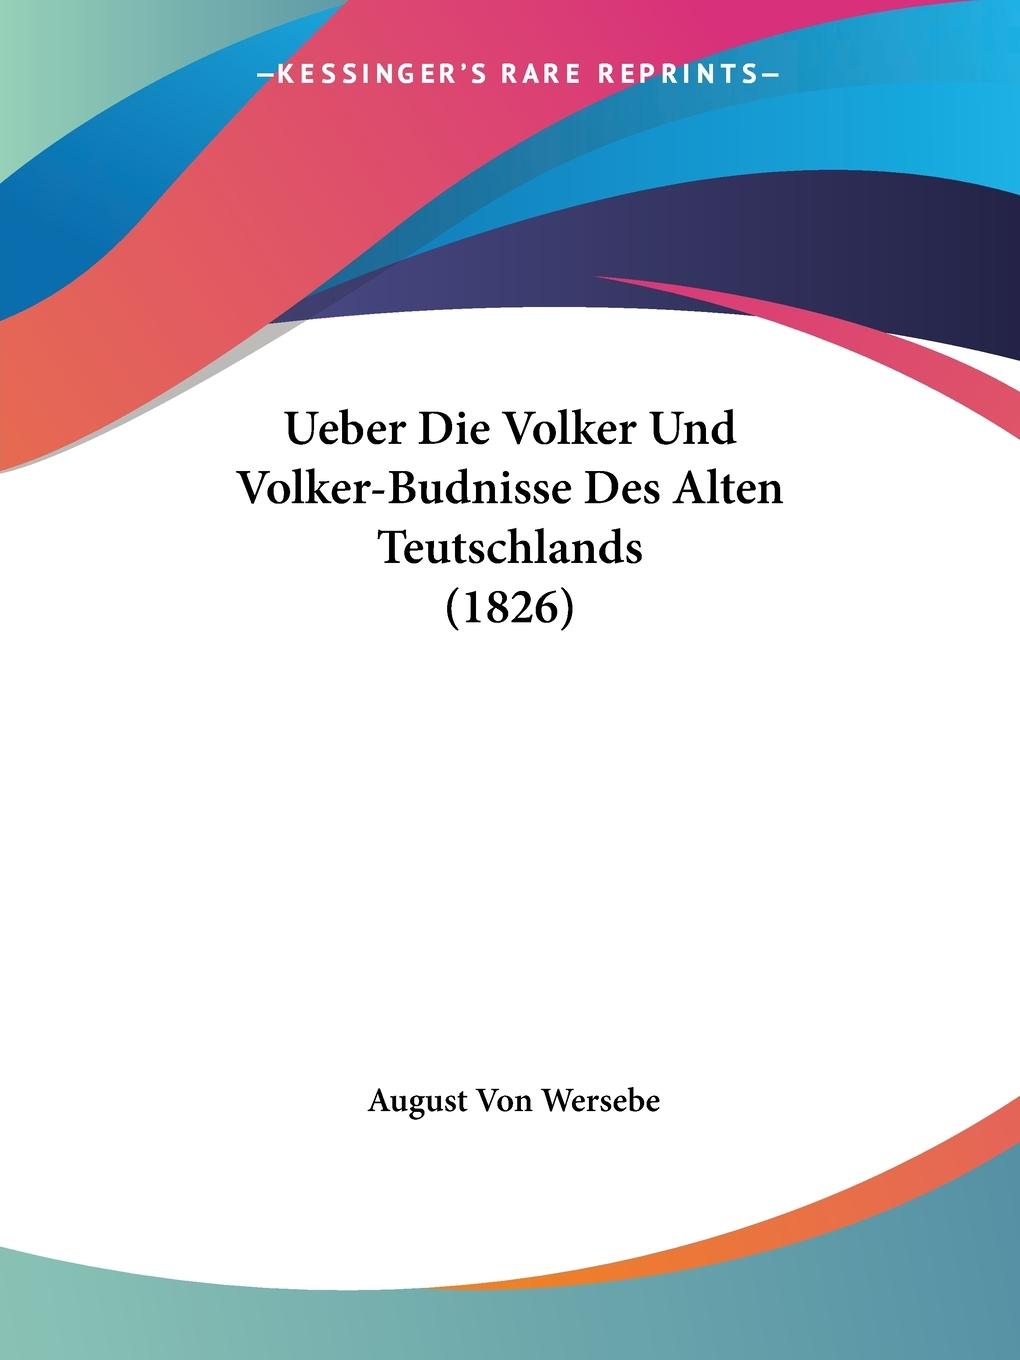 Ueber Die Volker Und Volker-Budnisse Des Alten Teutschlands (1826) - Wersebe, August Von